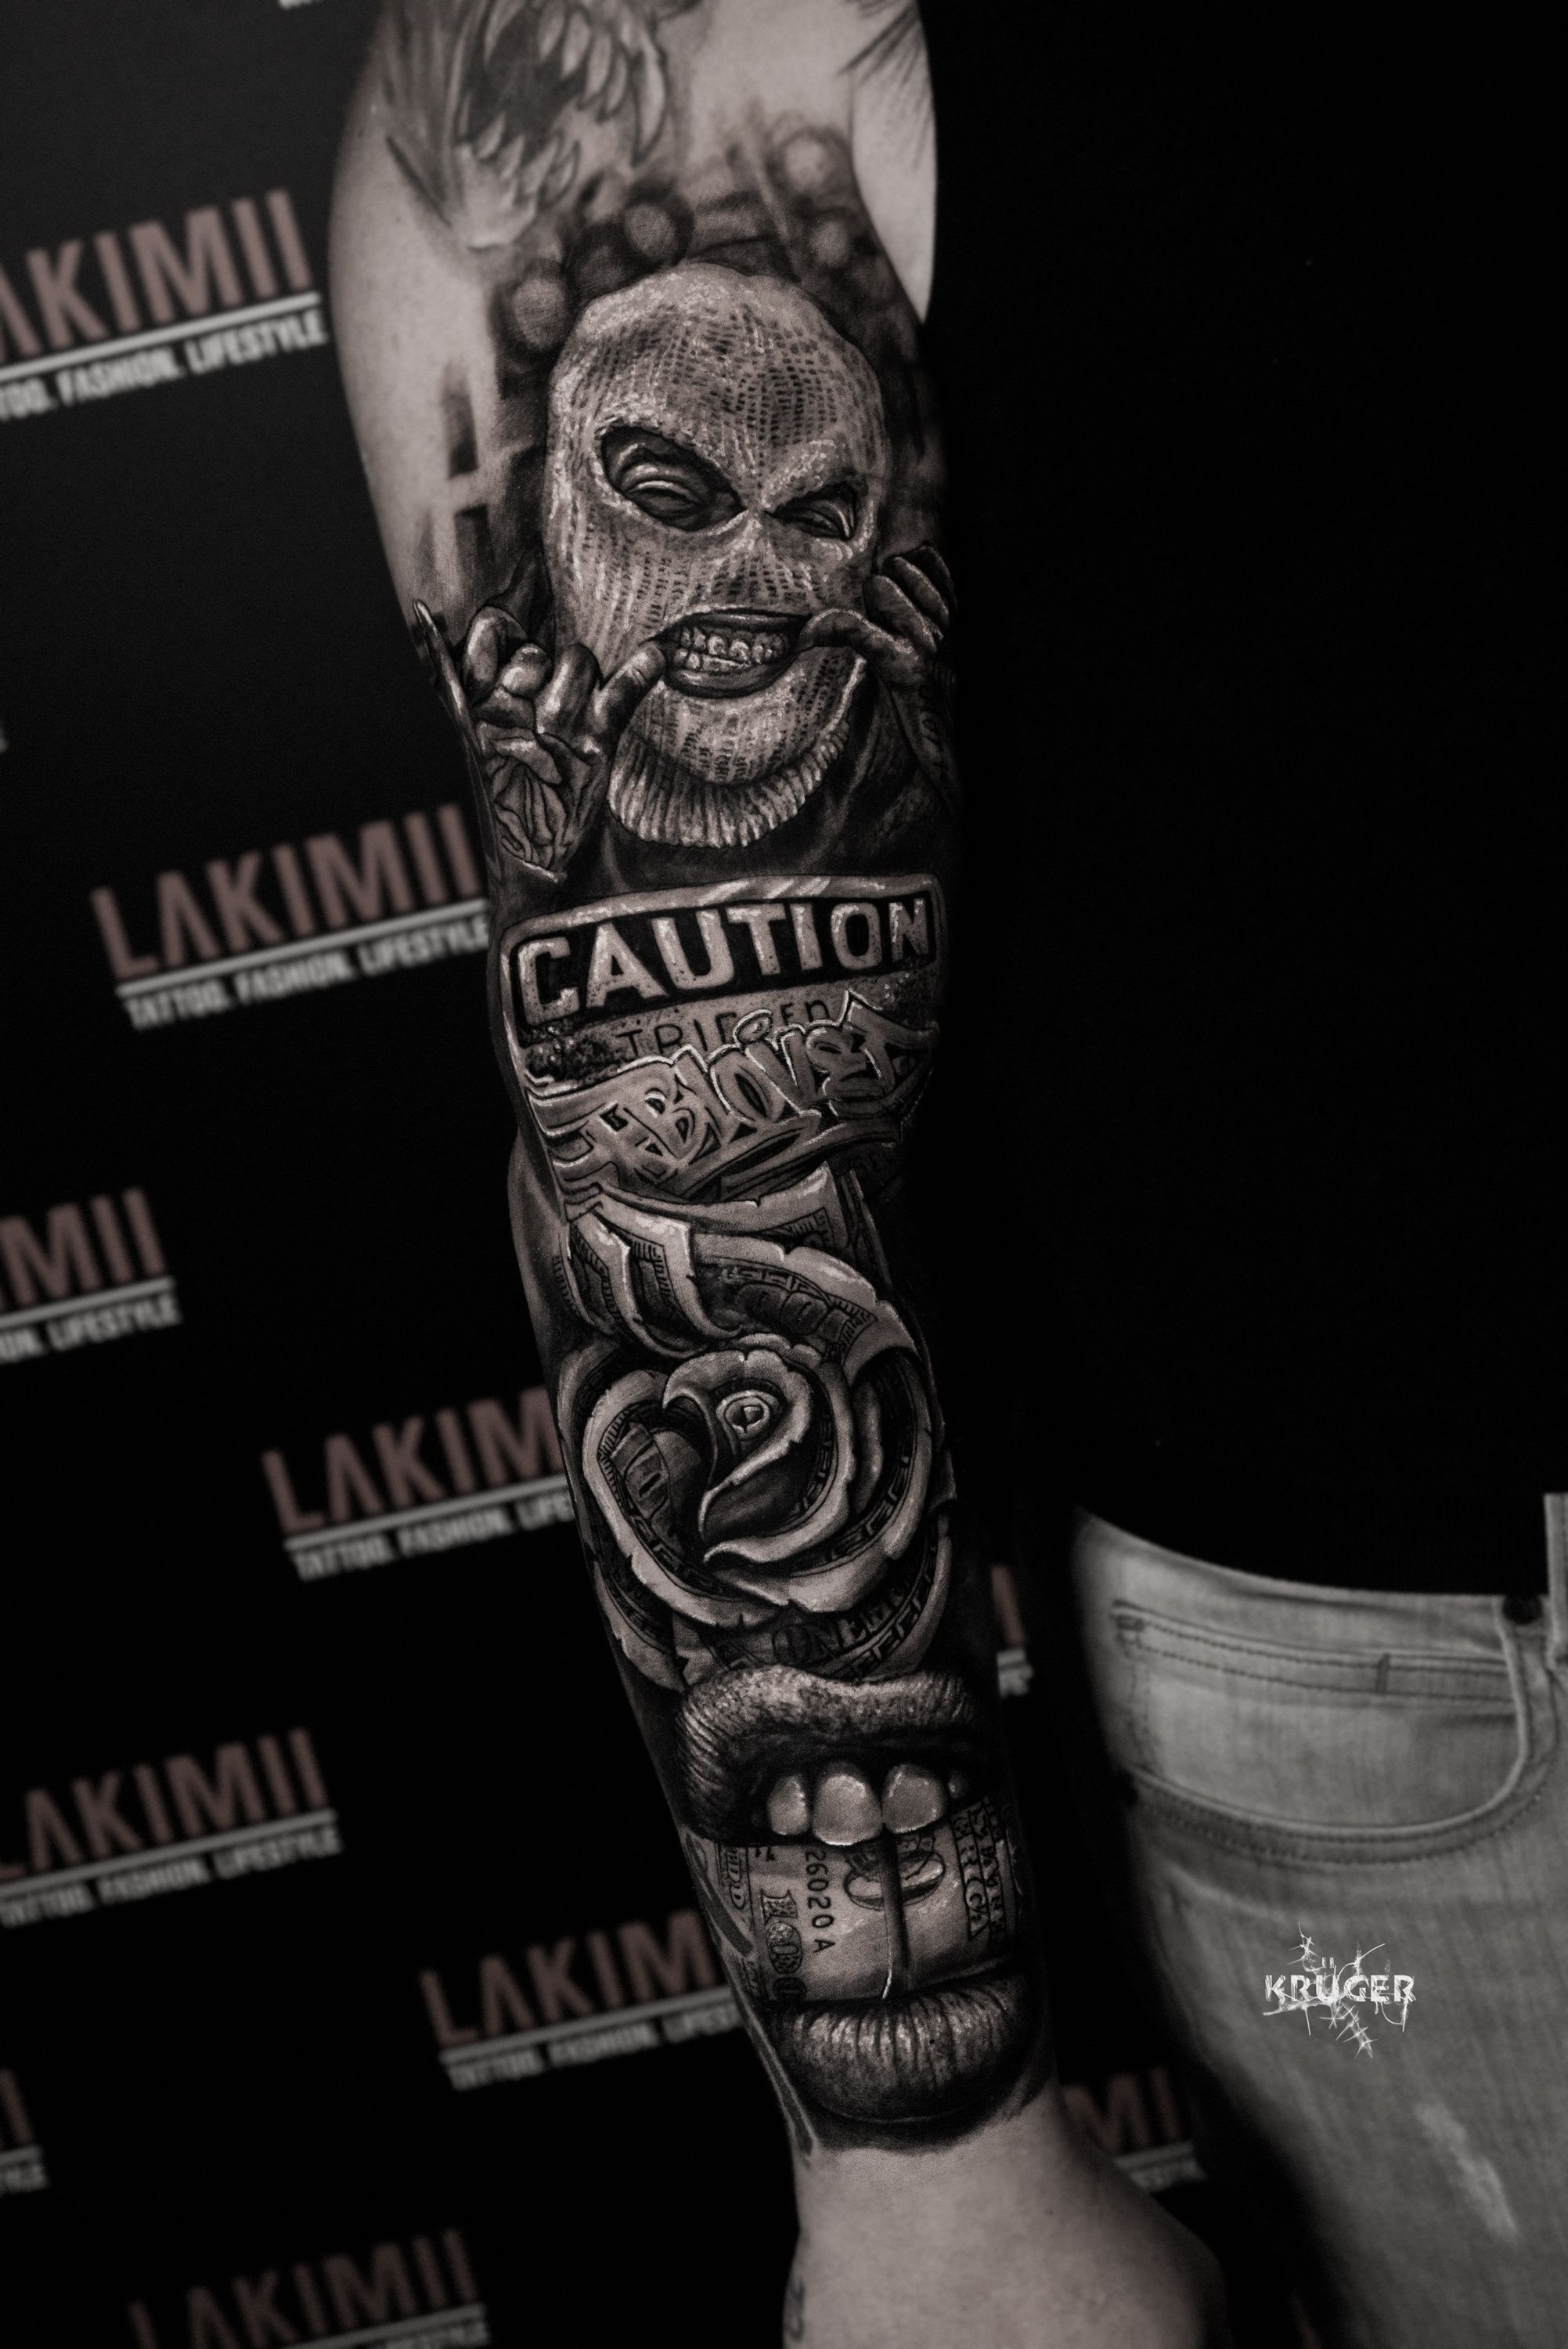 Tattoo uploaded by savage tattoo emporium • Tattoodo